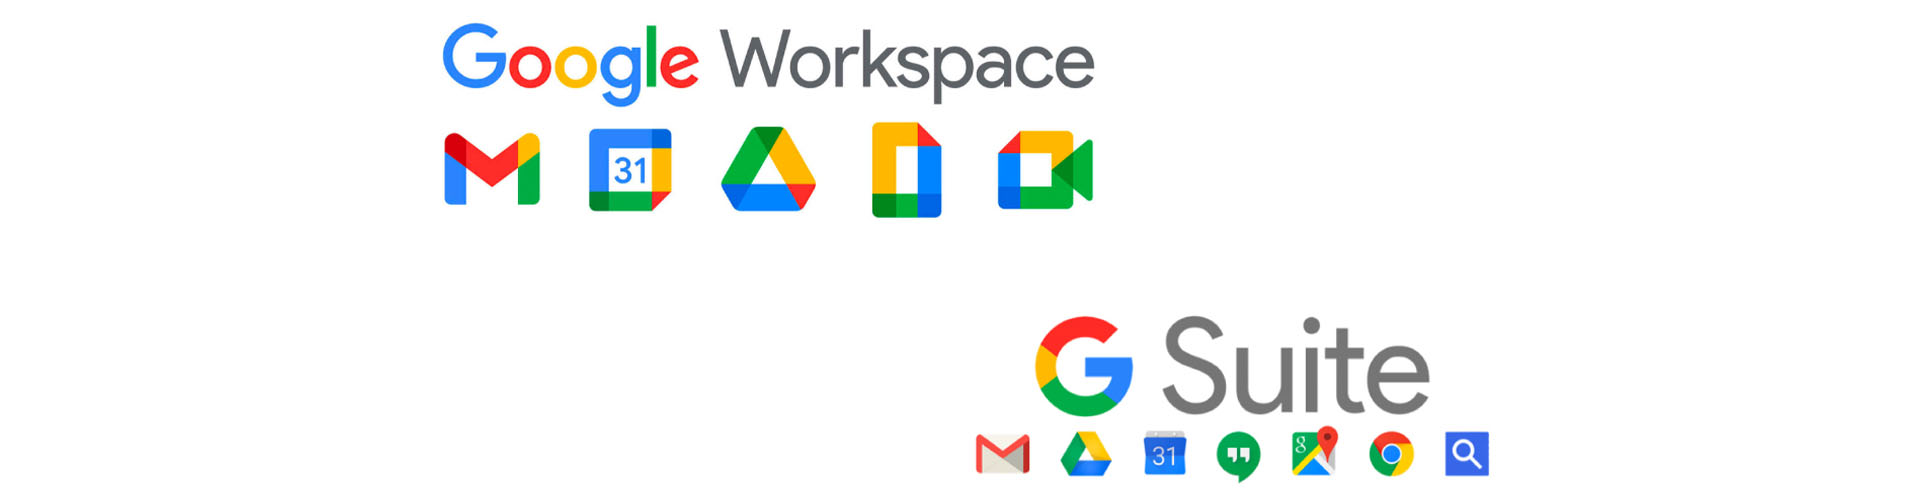 G Suite miễn phí không còn nữa và việc chuyển đổi lên Google Workspace